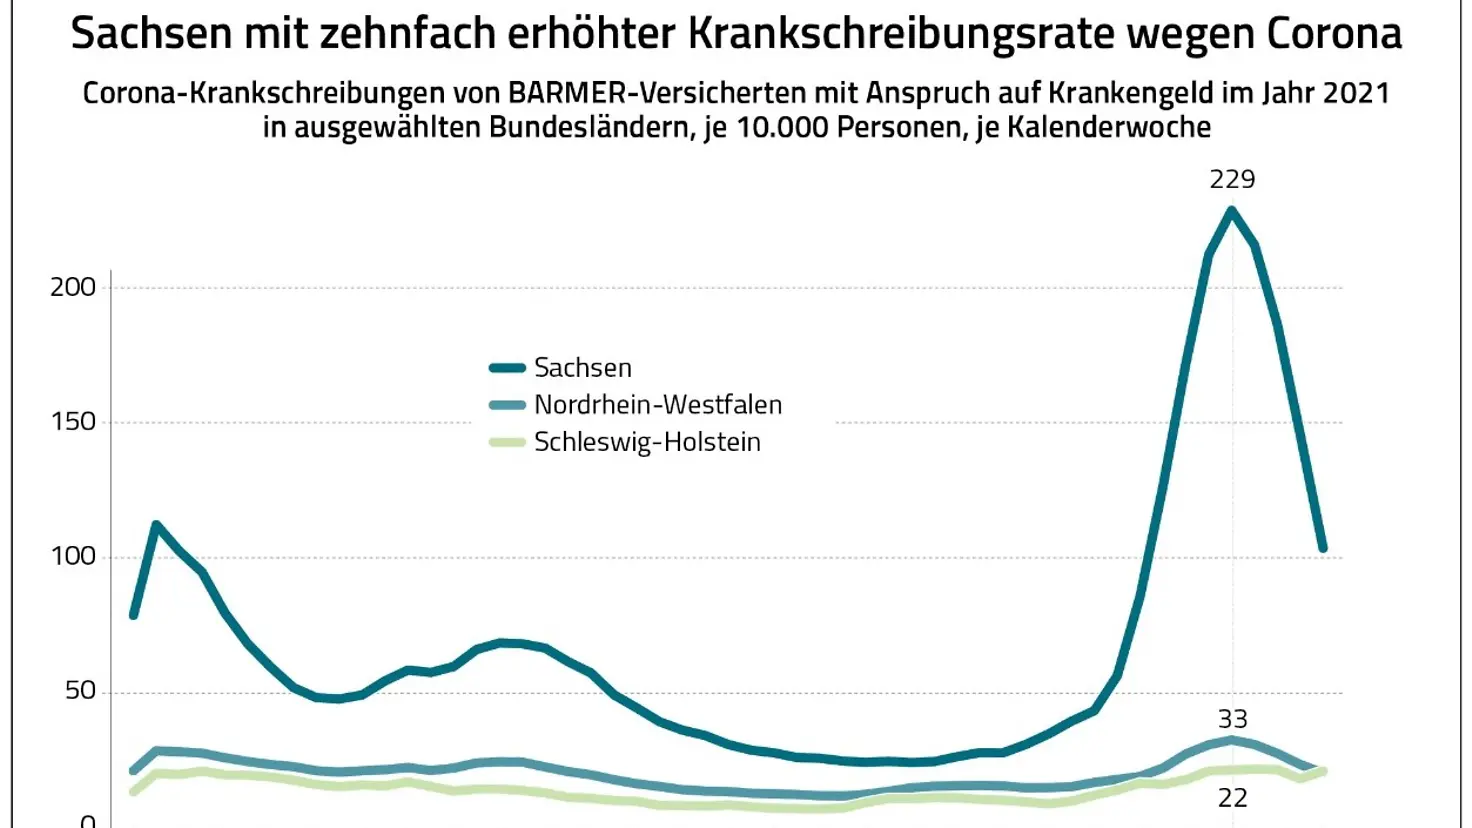 Die Grafik zeigt die Krankschreibungsraten wegen Corona im Jahr 2021 in Sachsen, Nordrhein-Westfalen und Schleswig-Holstein.